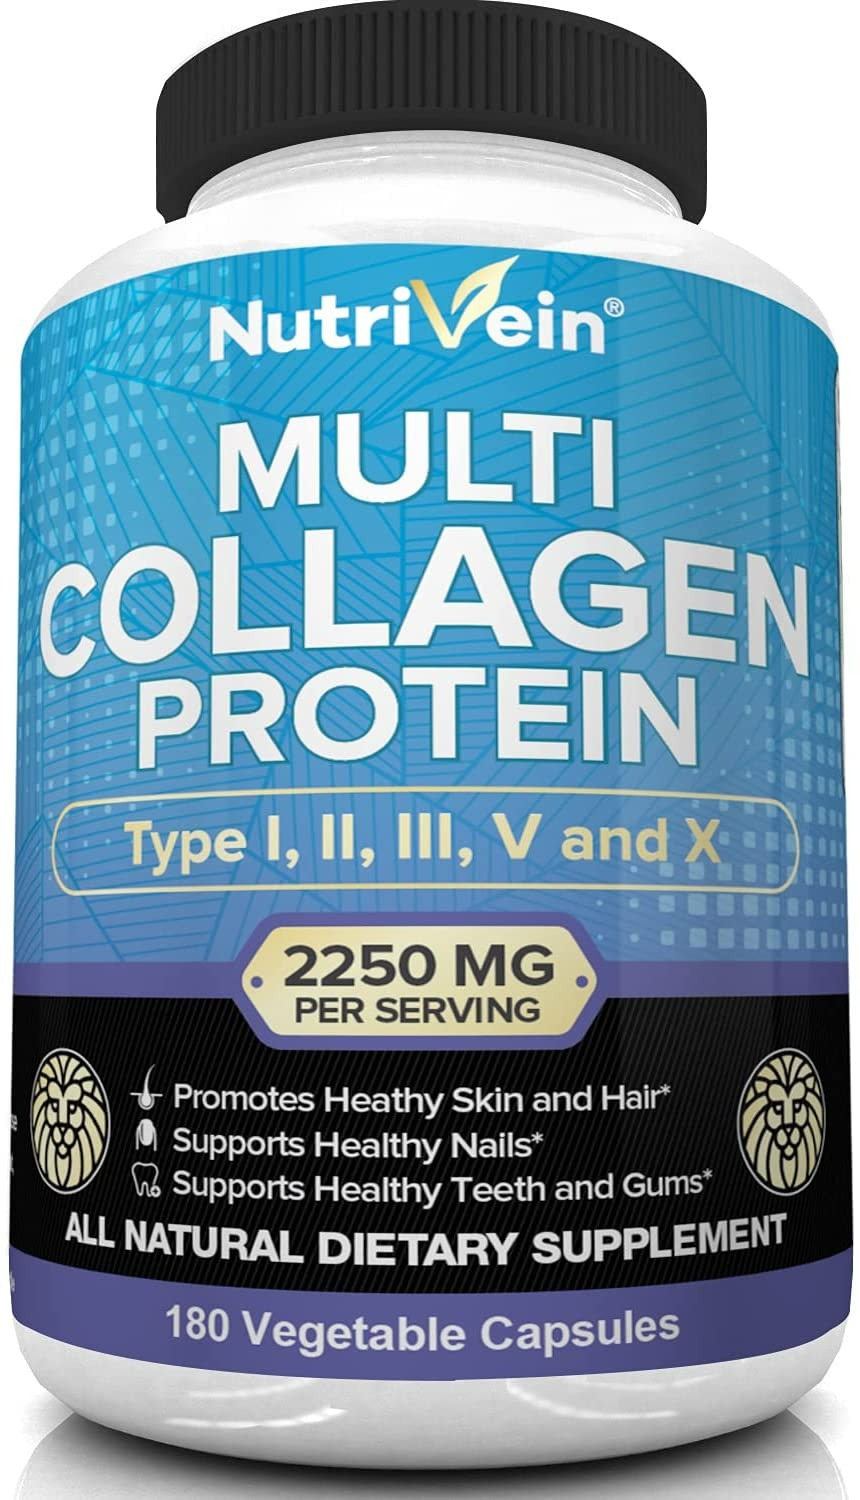 Nutrivein Multi Collagen Protein - 180 Capsules